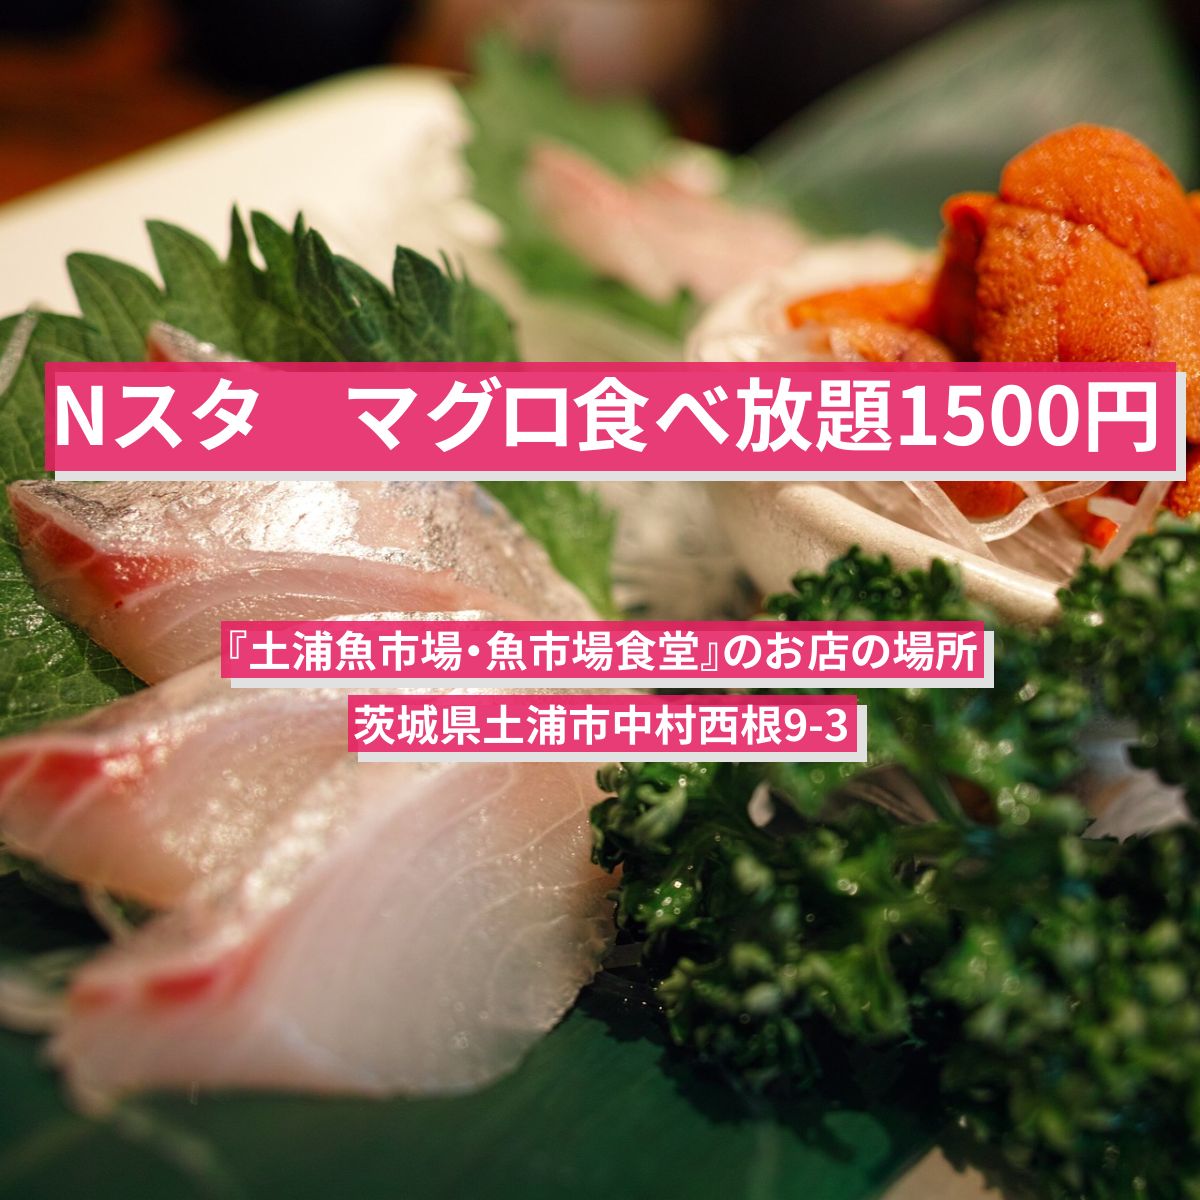 【Nスタ】マグロ食べ放題1500円『土浦魚市場・魚市場食堂』のお店の場所